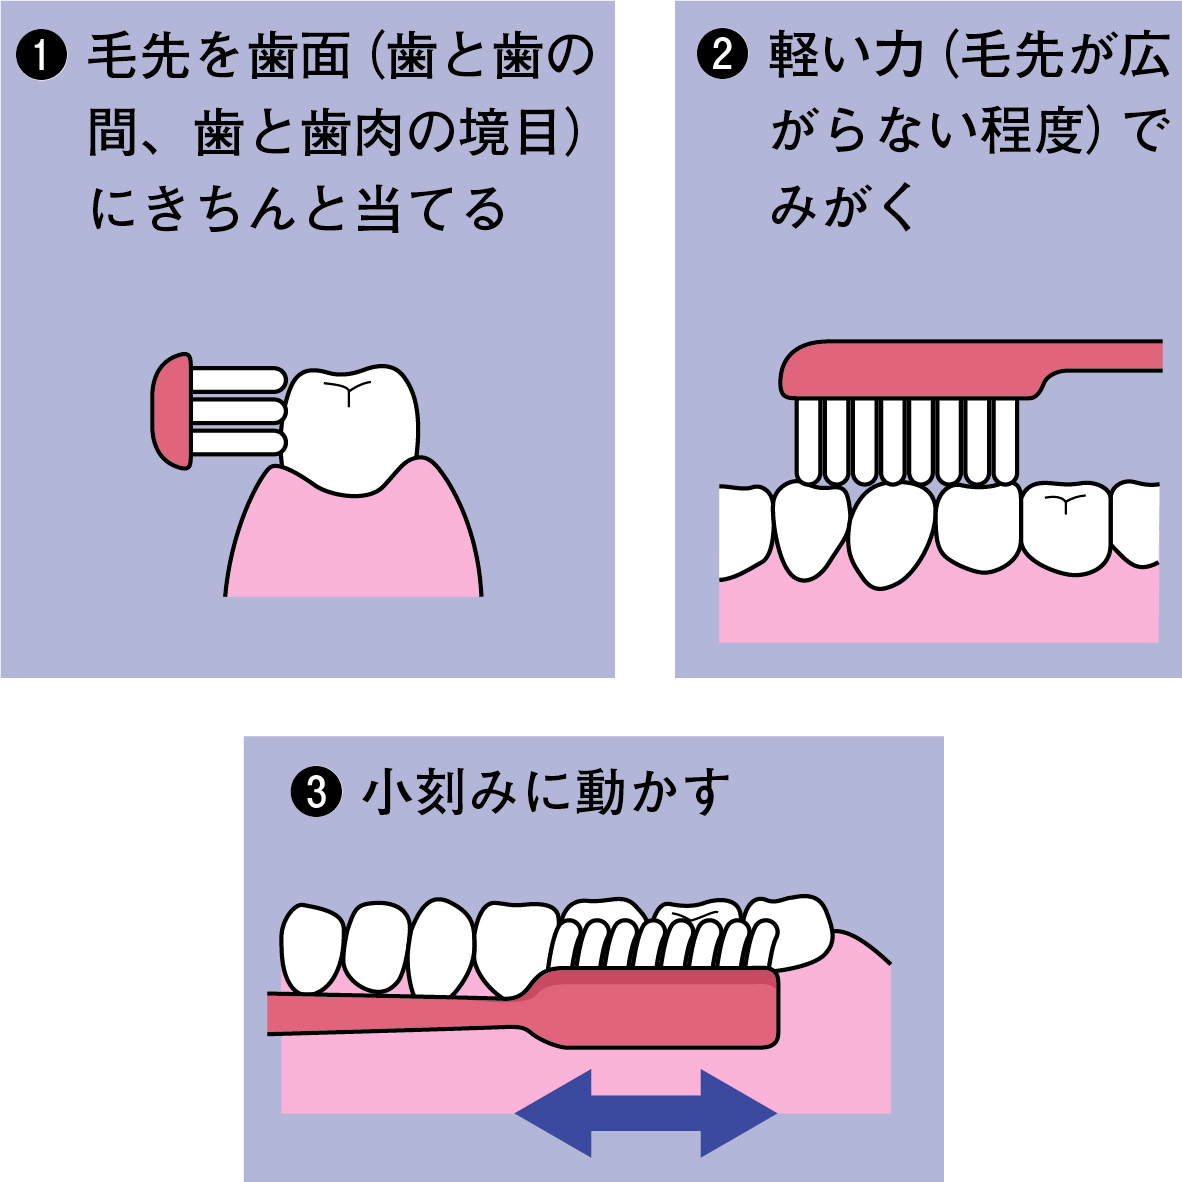 歯磨きの三つのポイント